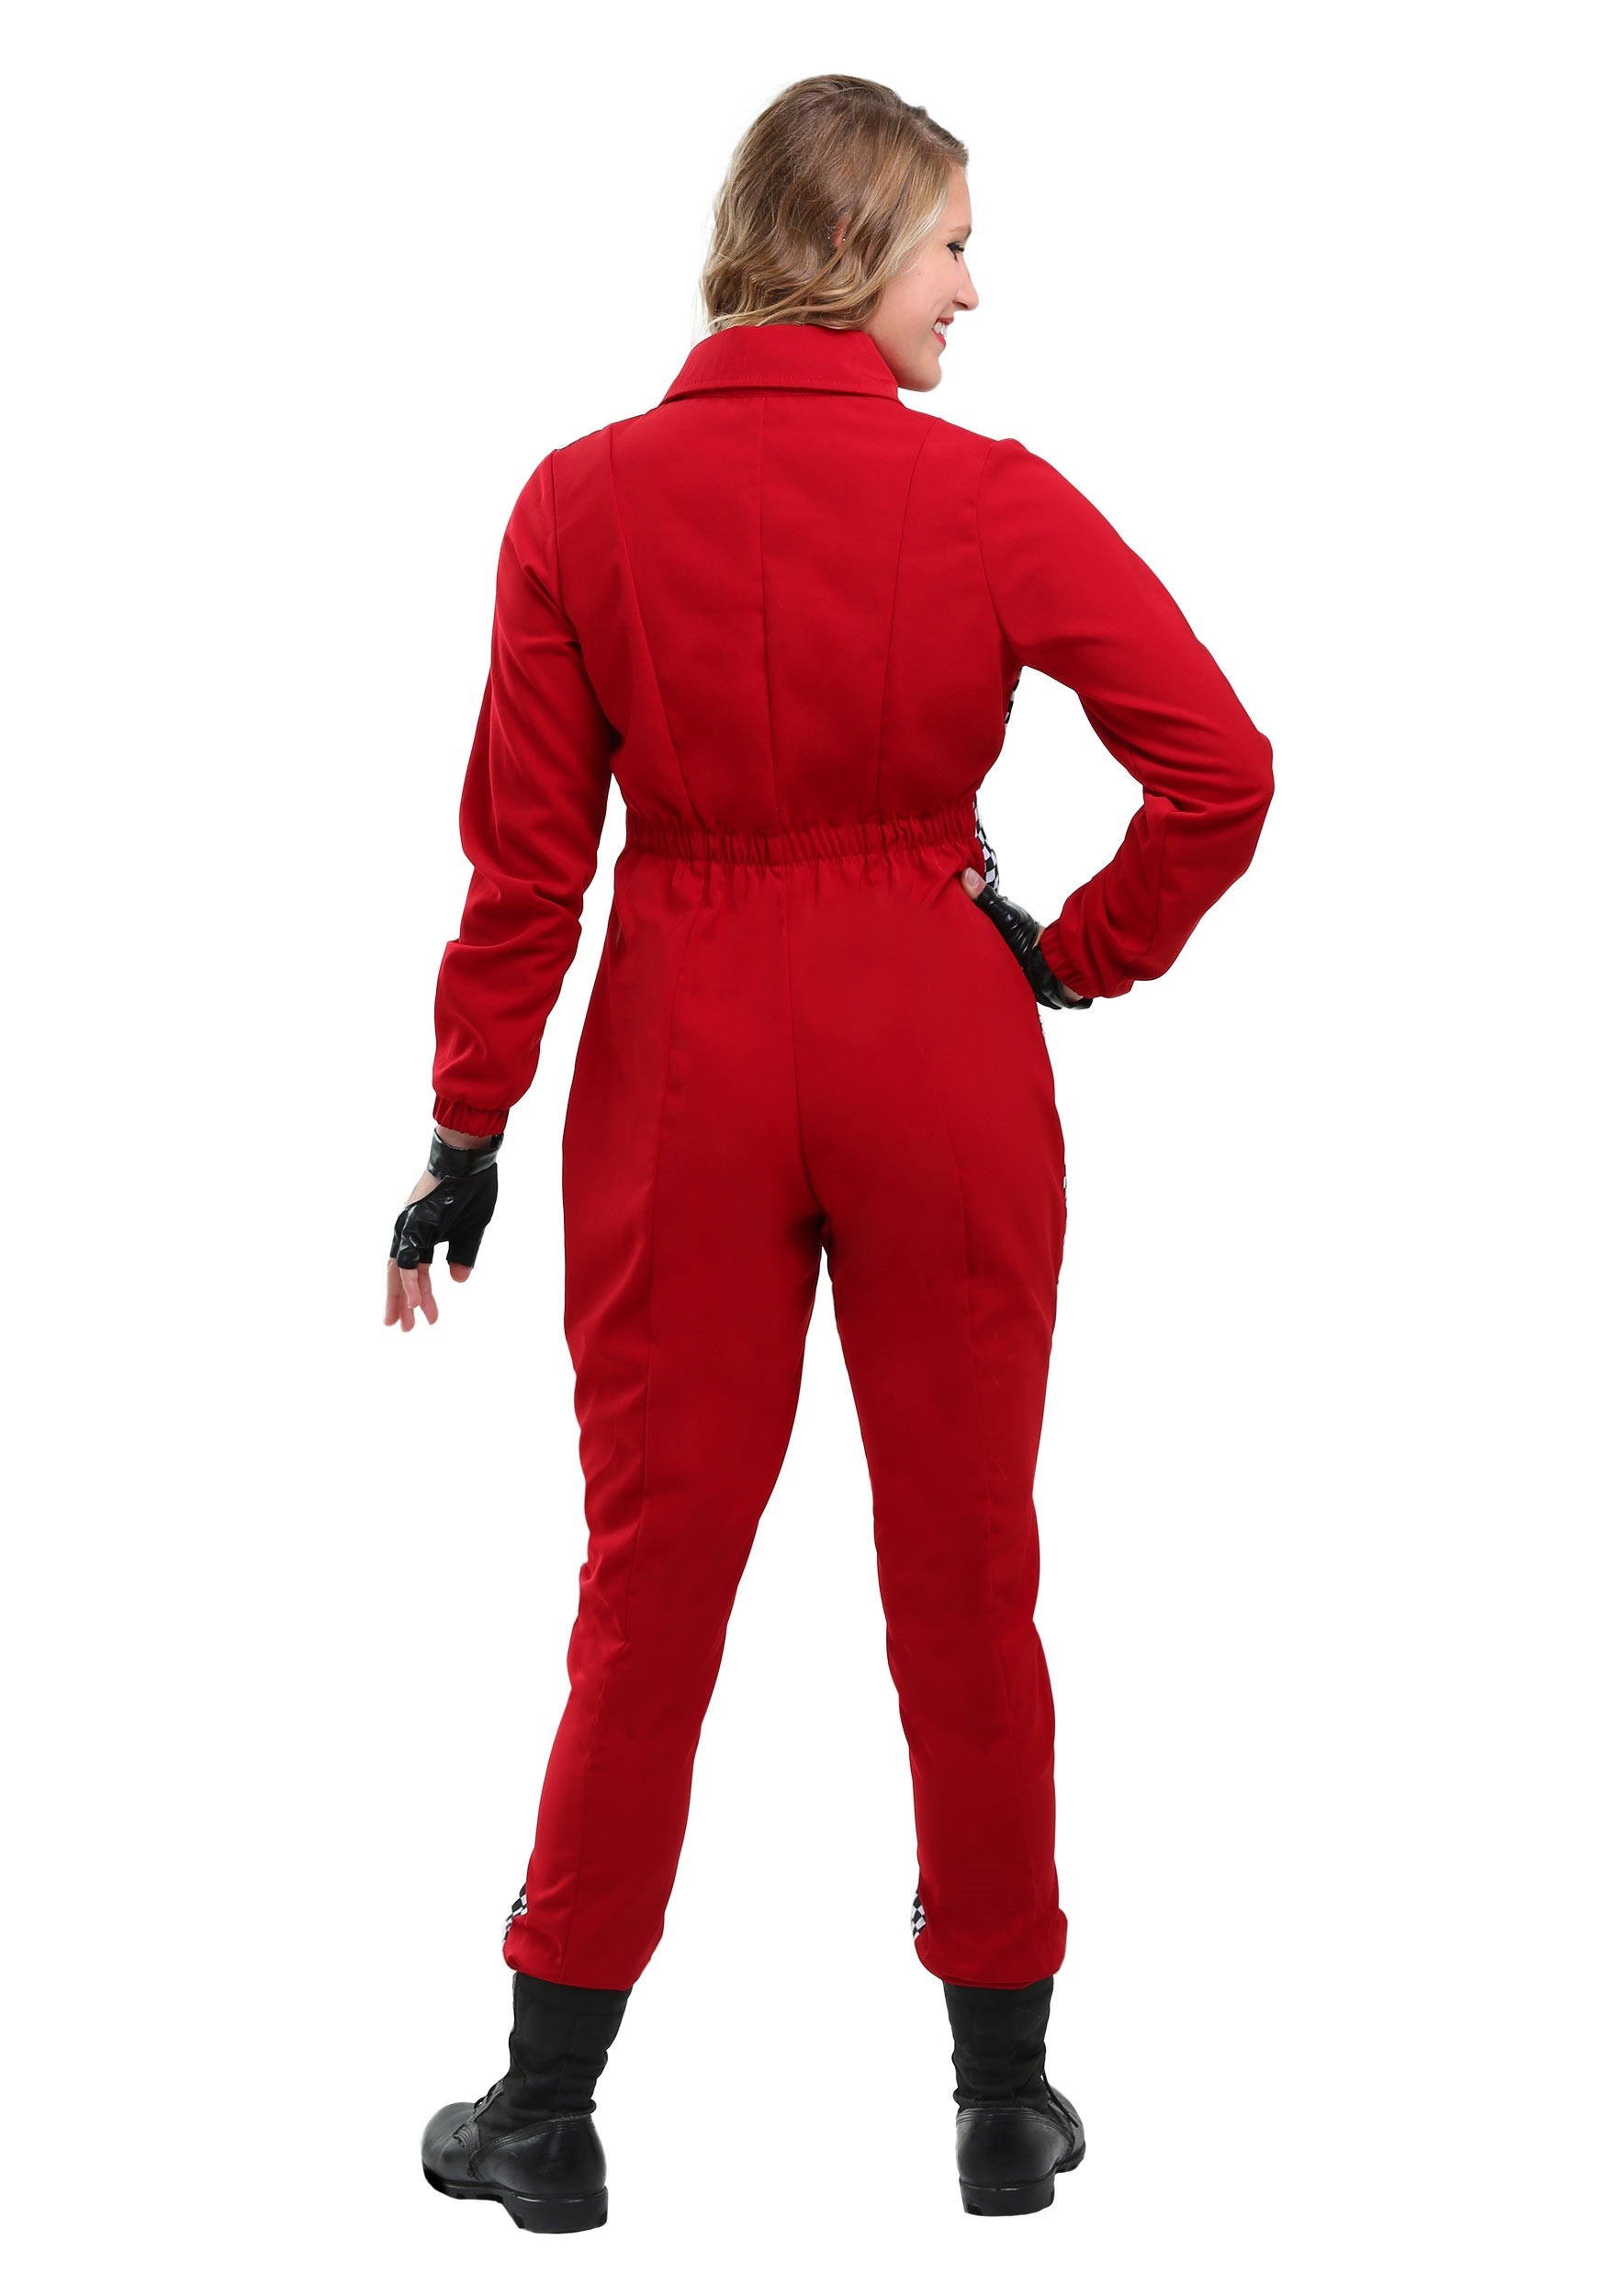 Racer Jumpsuit Plus Size Costume For Women